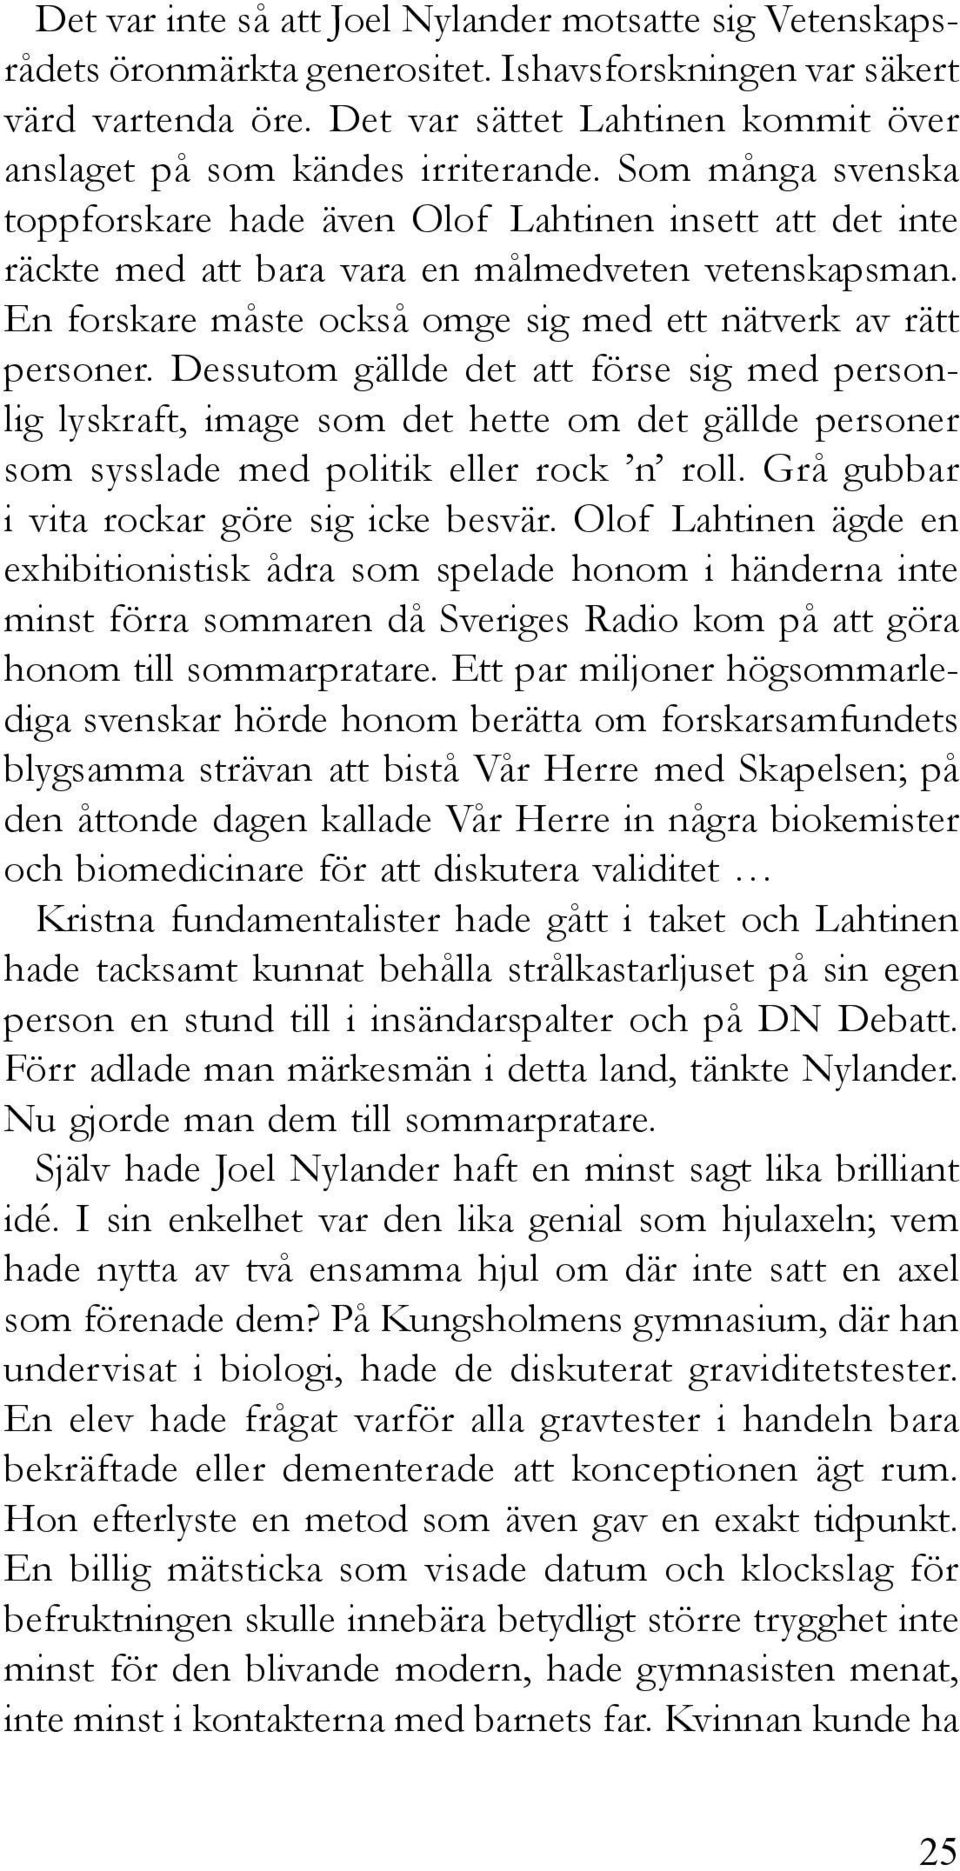 Som många svenska toppforskare hade även Olof Lahtinen insett att det inte räckte med att bara vara en målmedveten vetenskapsman. En forskare måste också omge sig med ett nätverk av rätt personer.